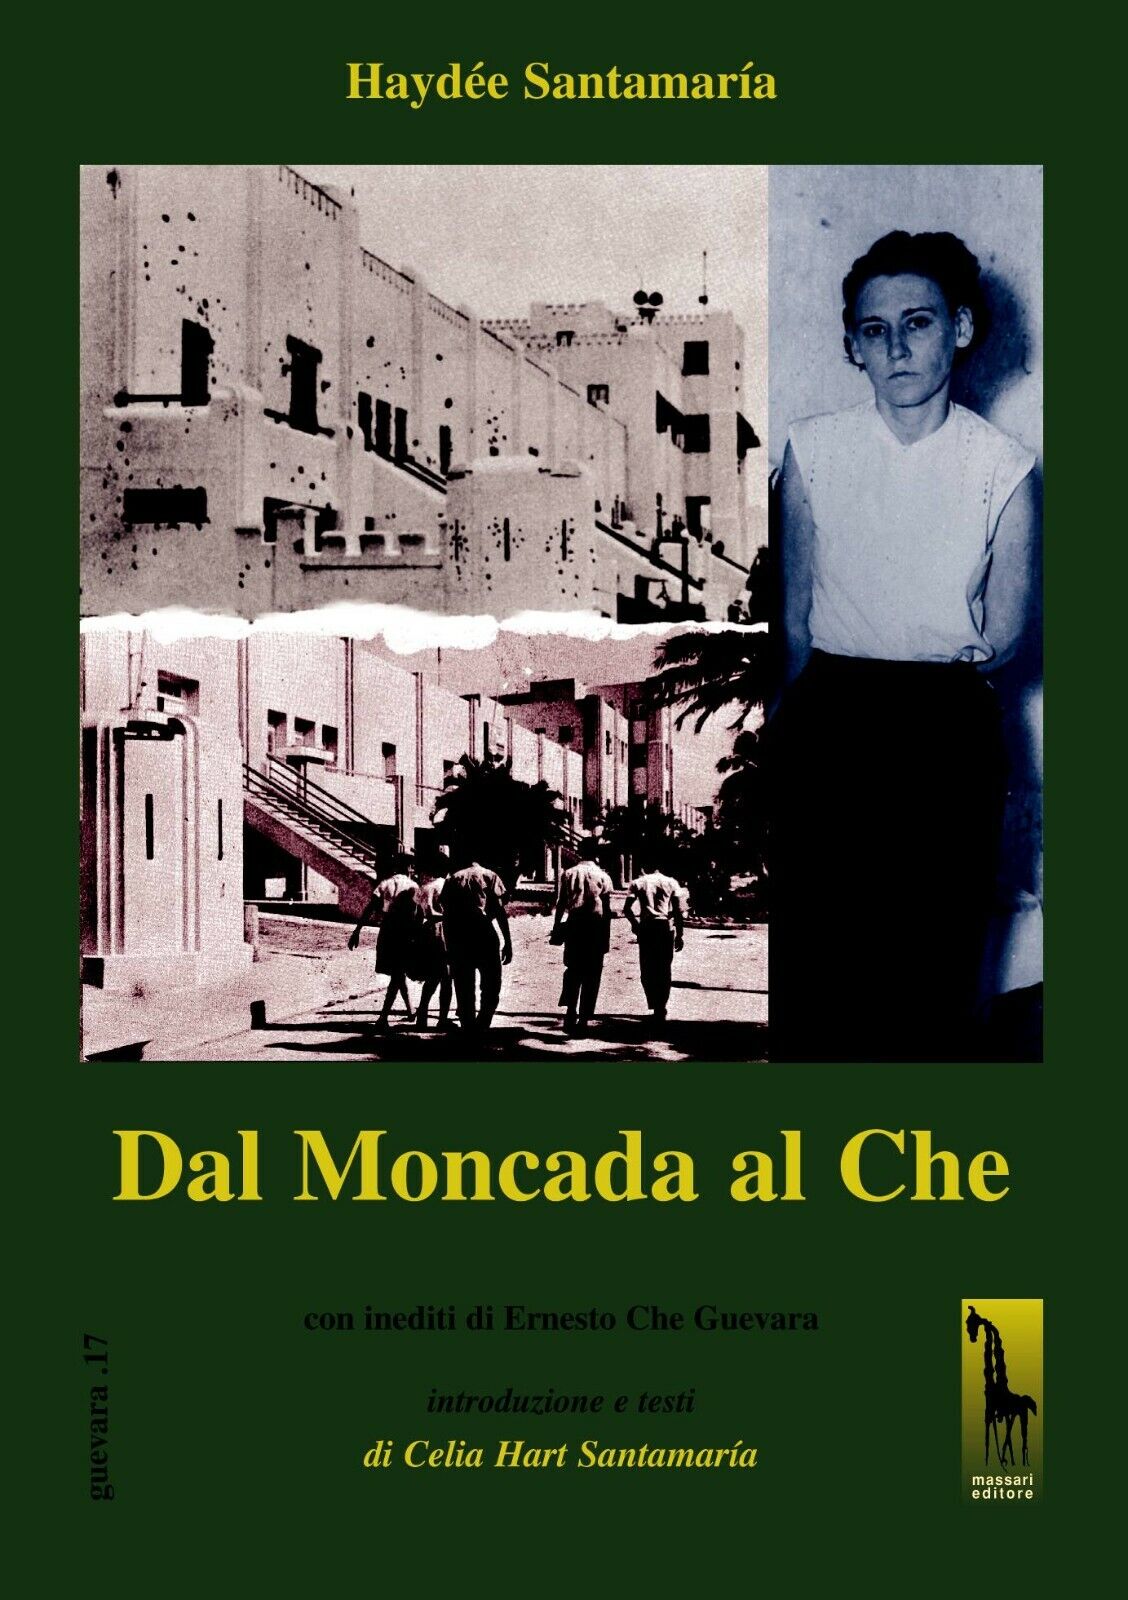 Dal Moncada al Che di Hayd?e Santamar?a,  2006,  Massari Editore